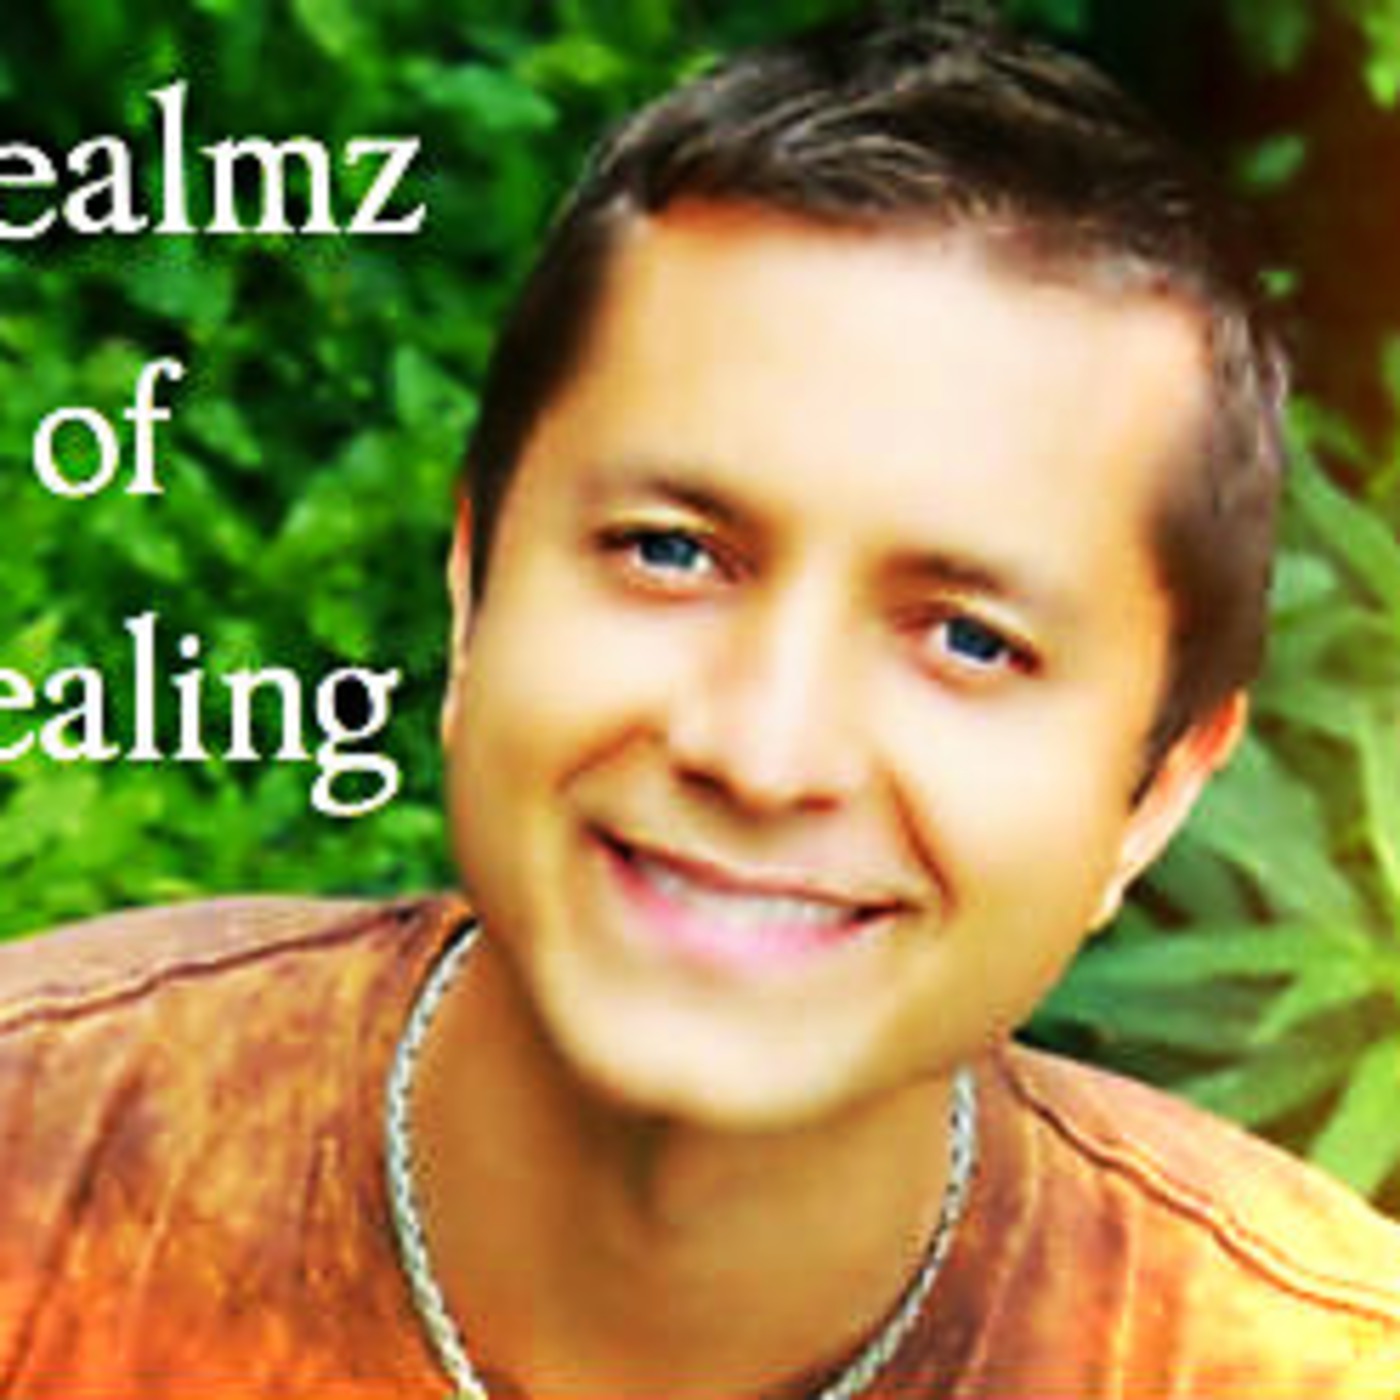 Realmz of Healing